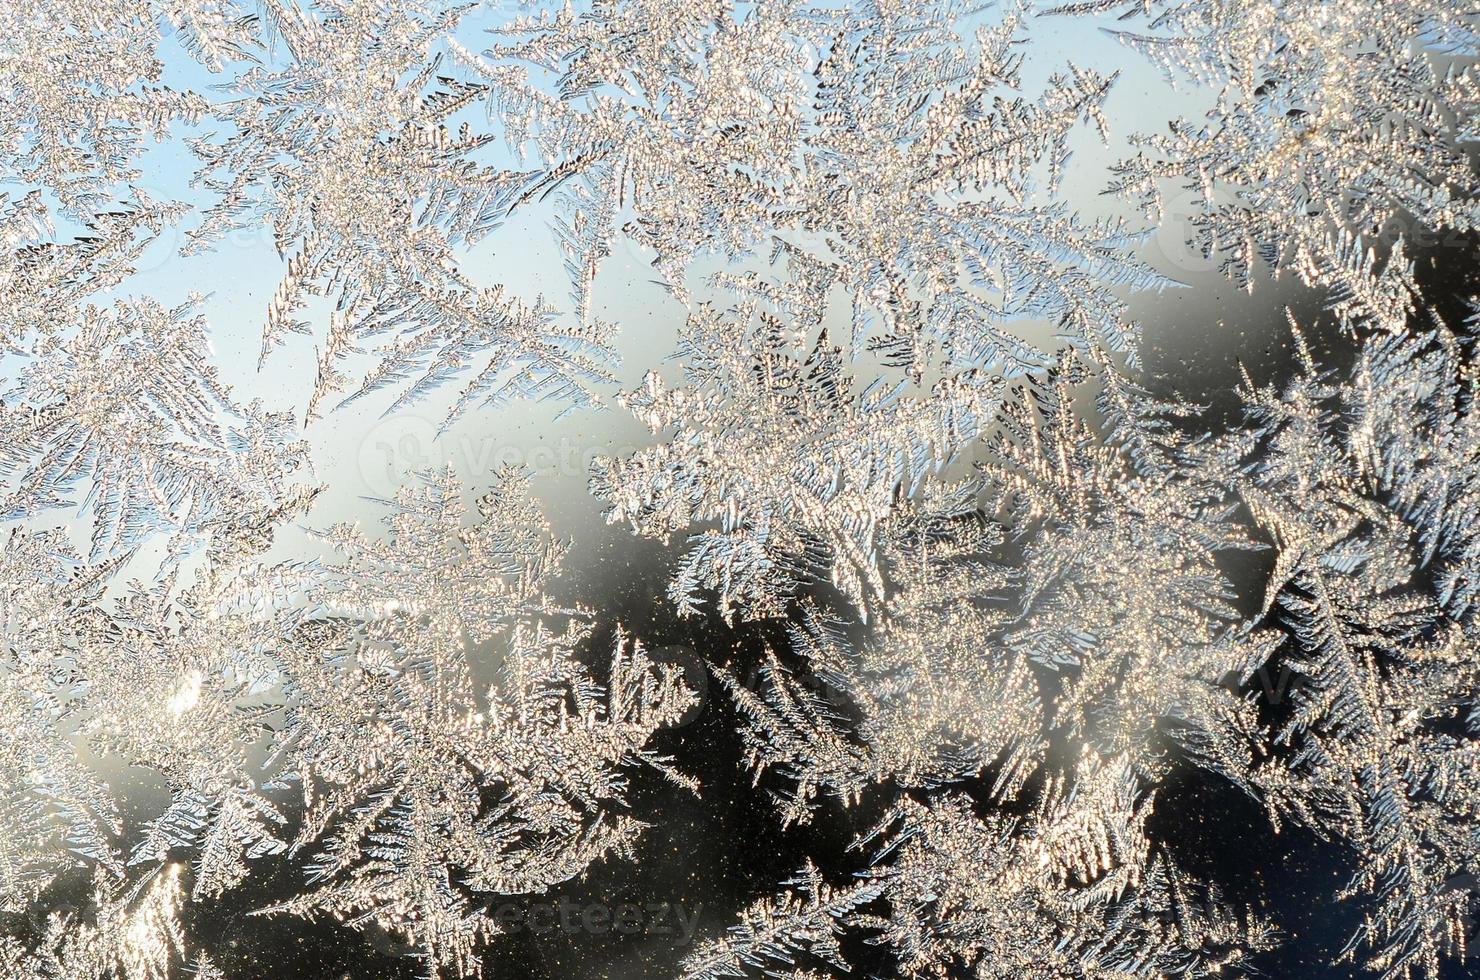 Schneeflocken Frost Raureif Makro auf Fensterglasscheibe foto